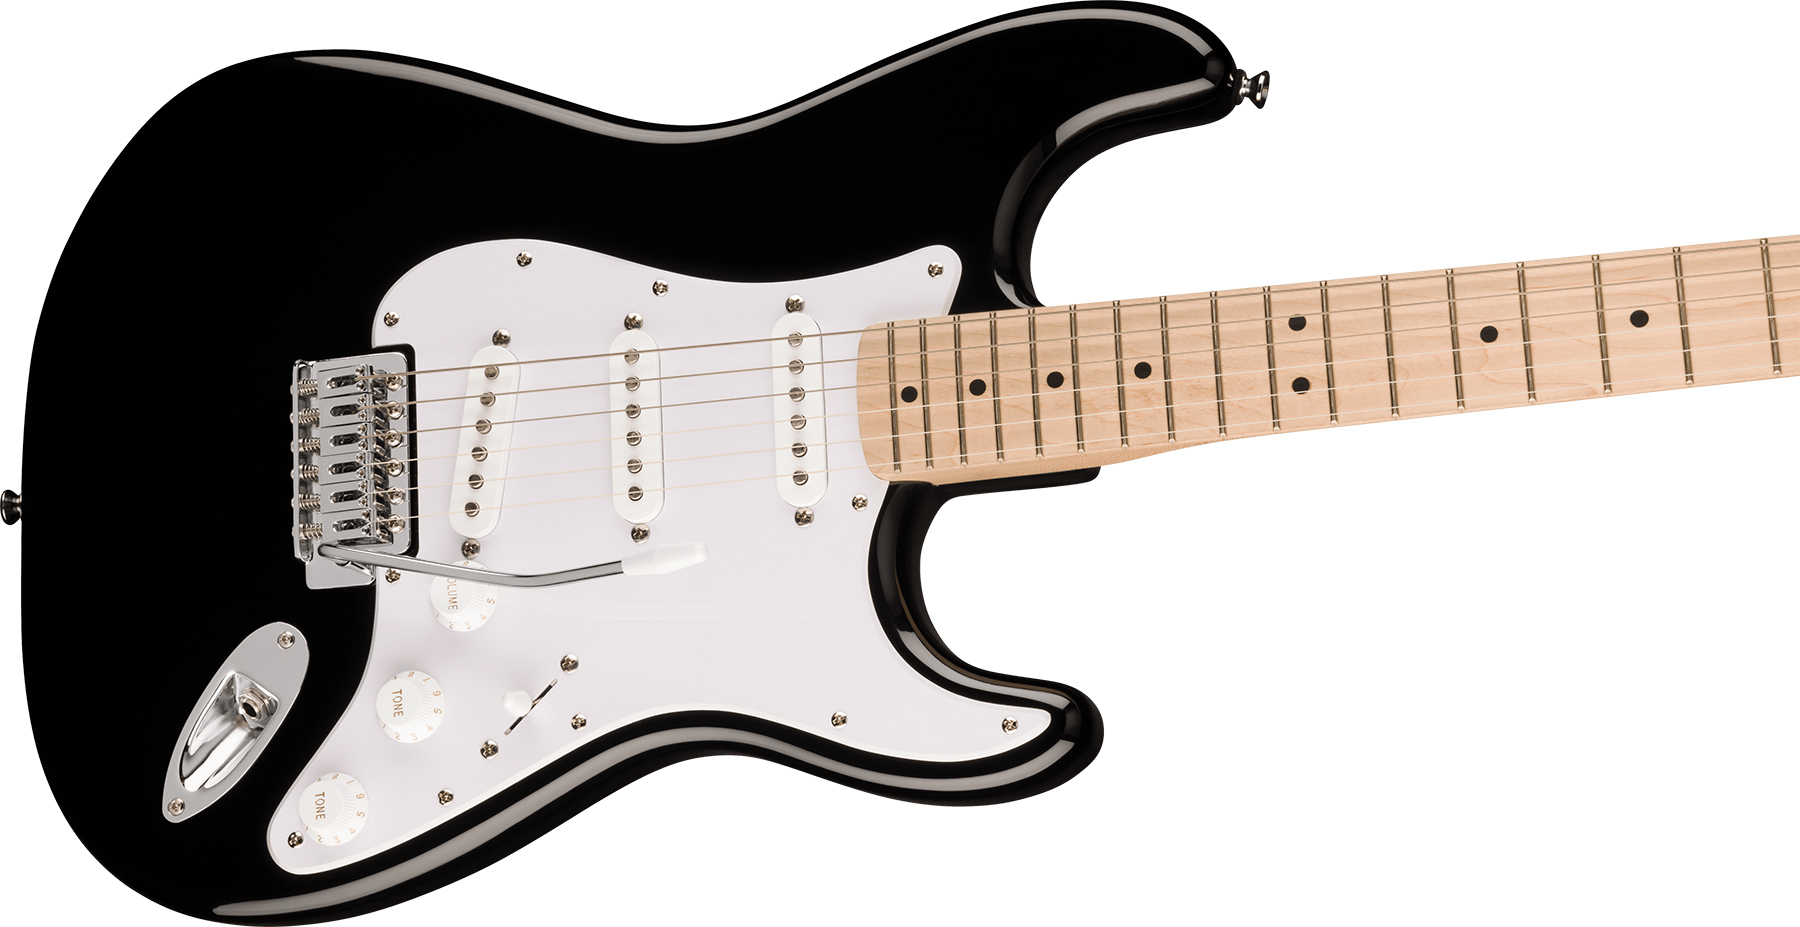 Squier Strat Sonic Lh Gaucher 3s Trem Mn - Black - Linkshandige elektrische gitaar - Variation 2